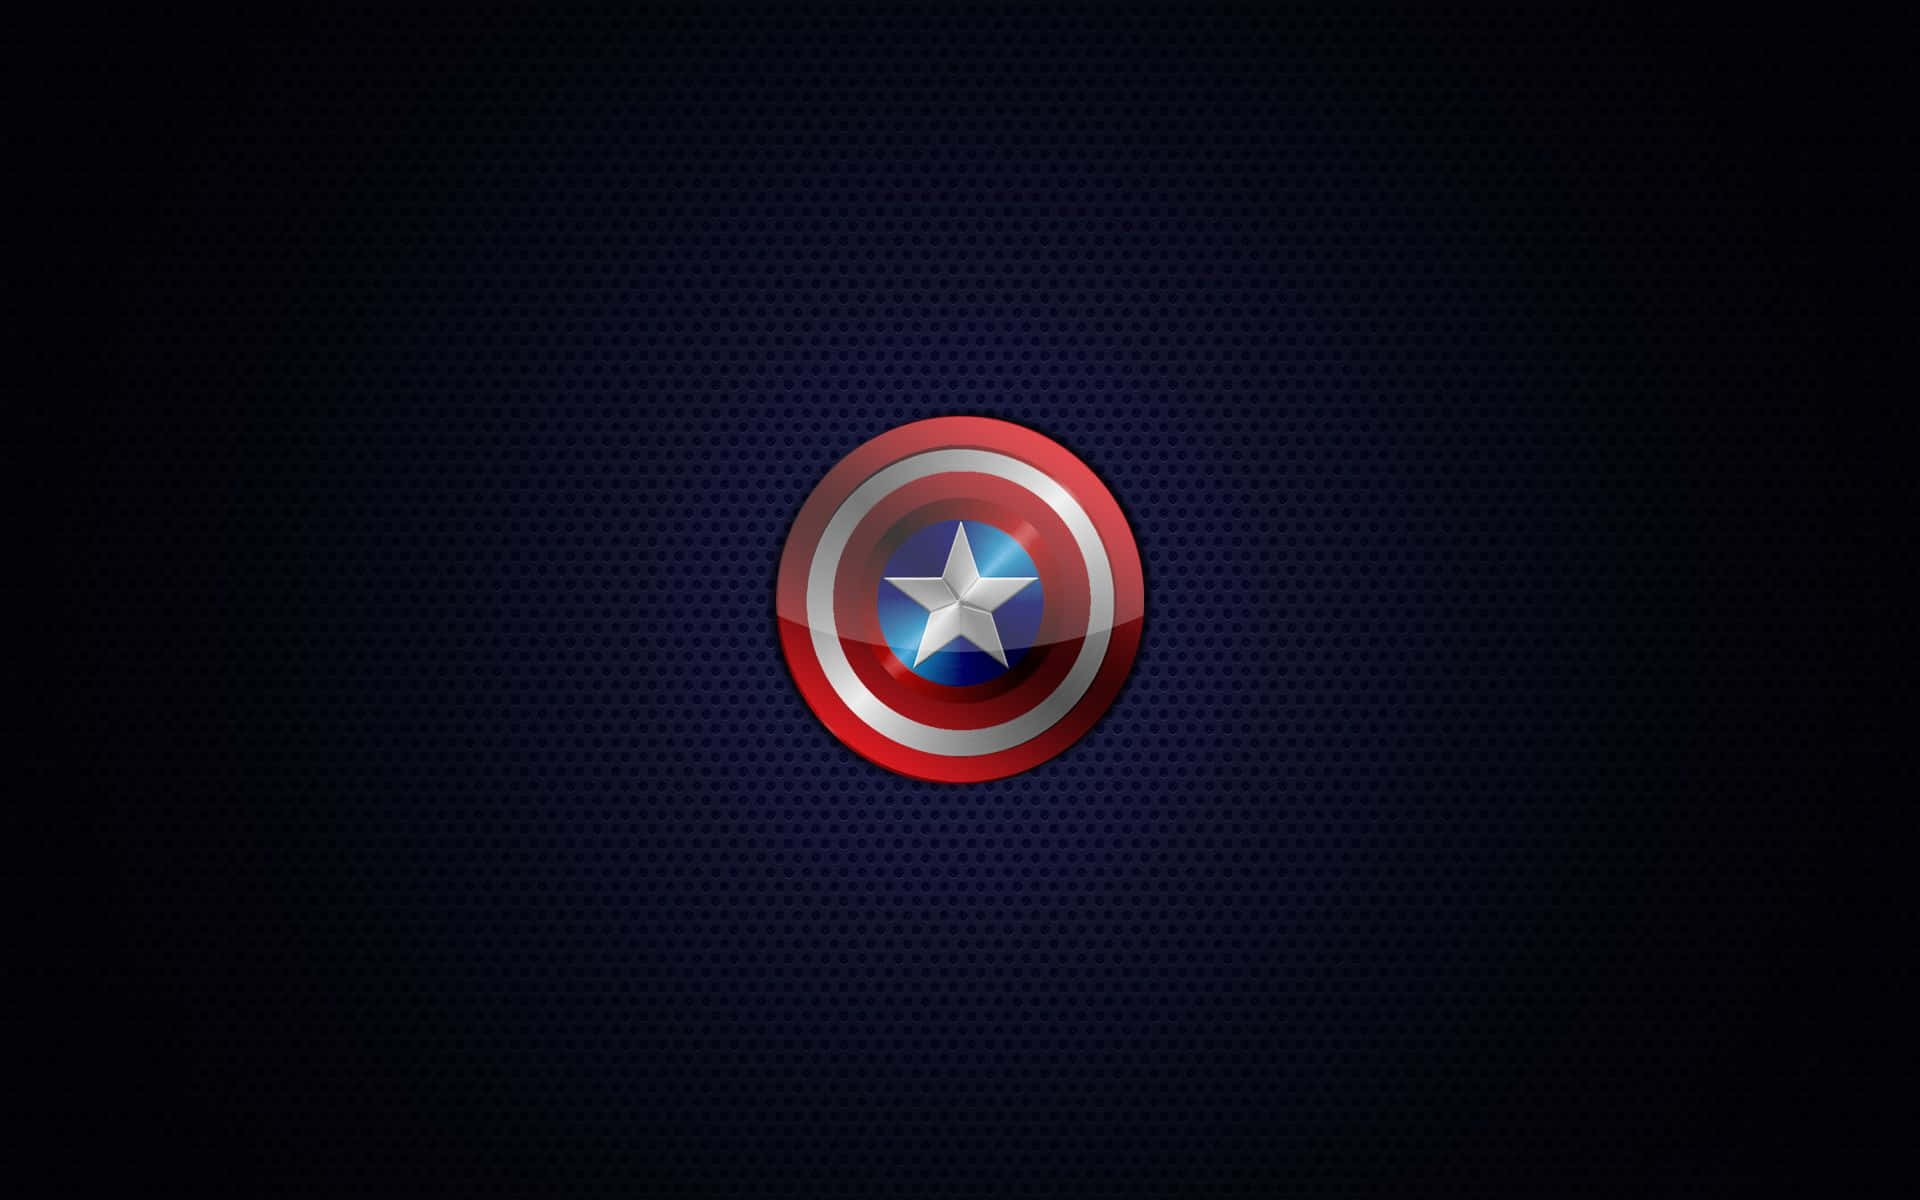 Imagenlogo Brillante De Captain America En Rojo, Blanco Y Azul. Fondo de pantalla